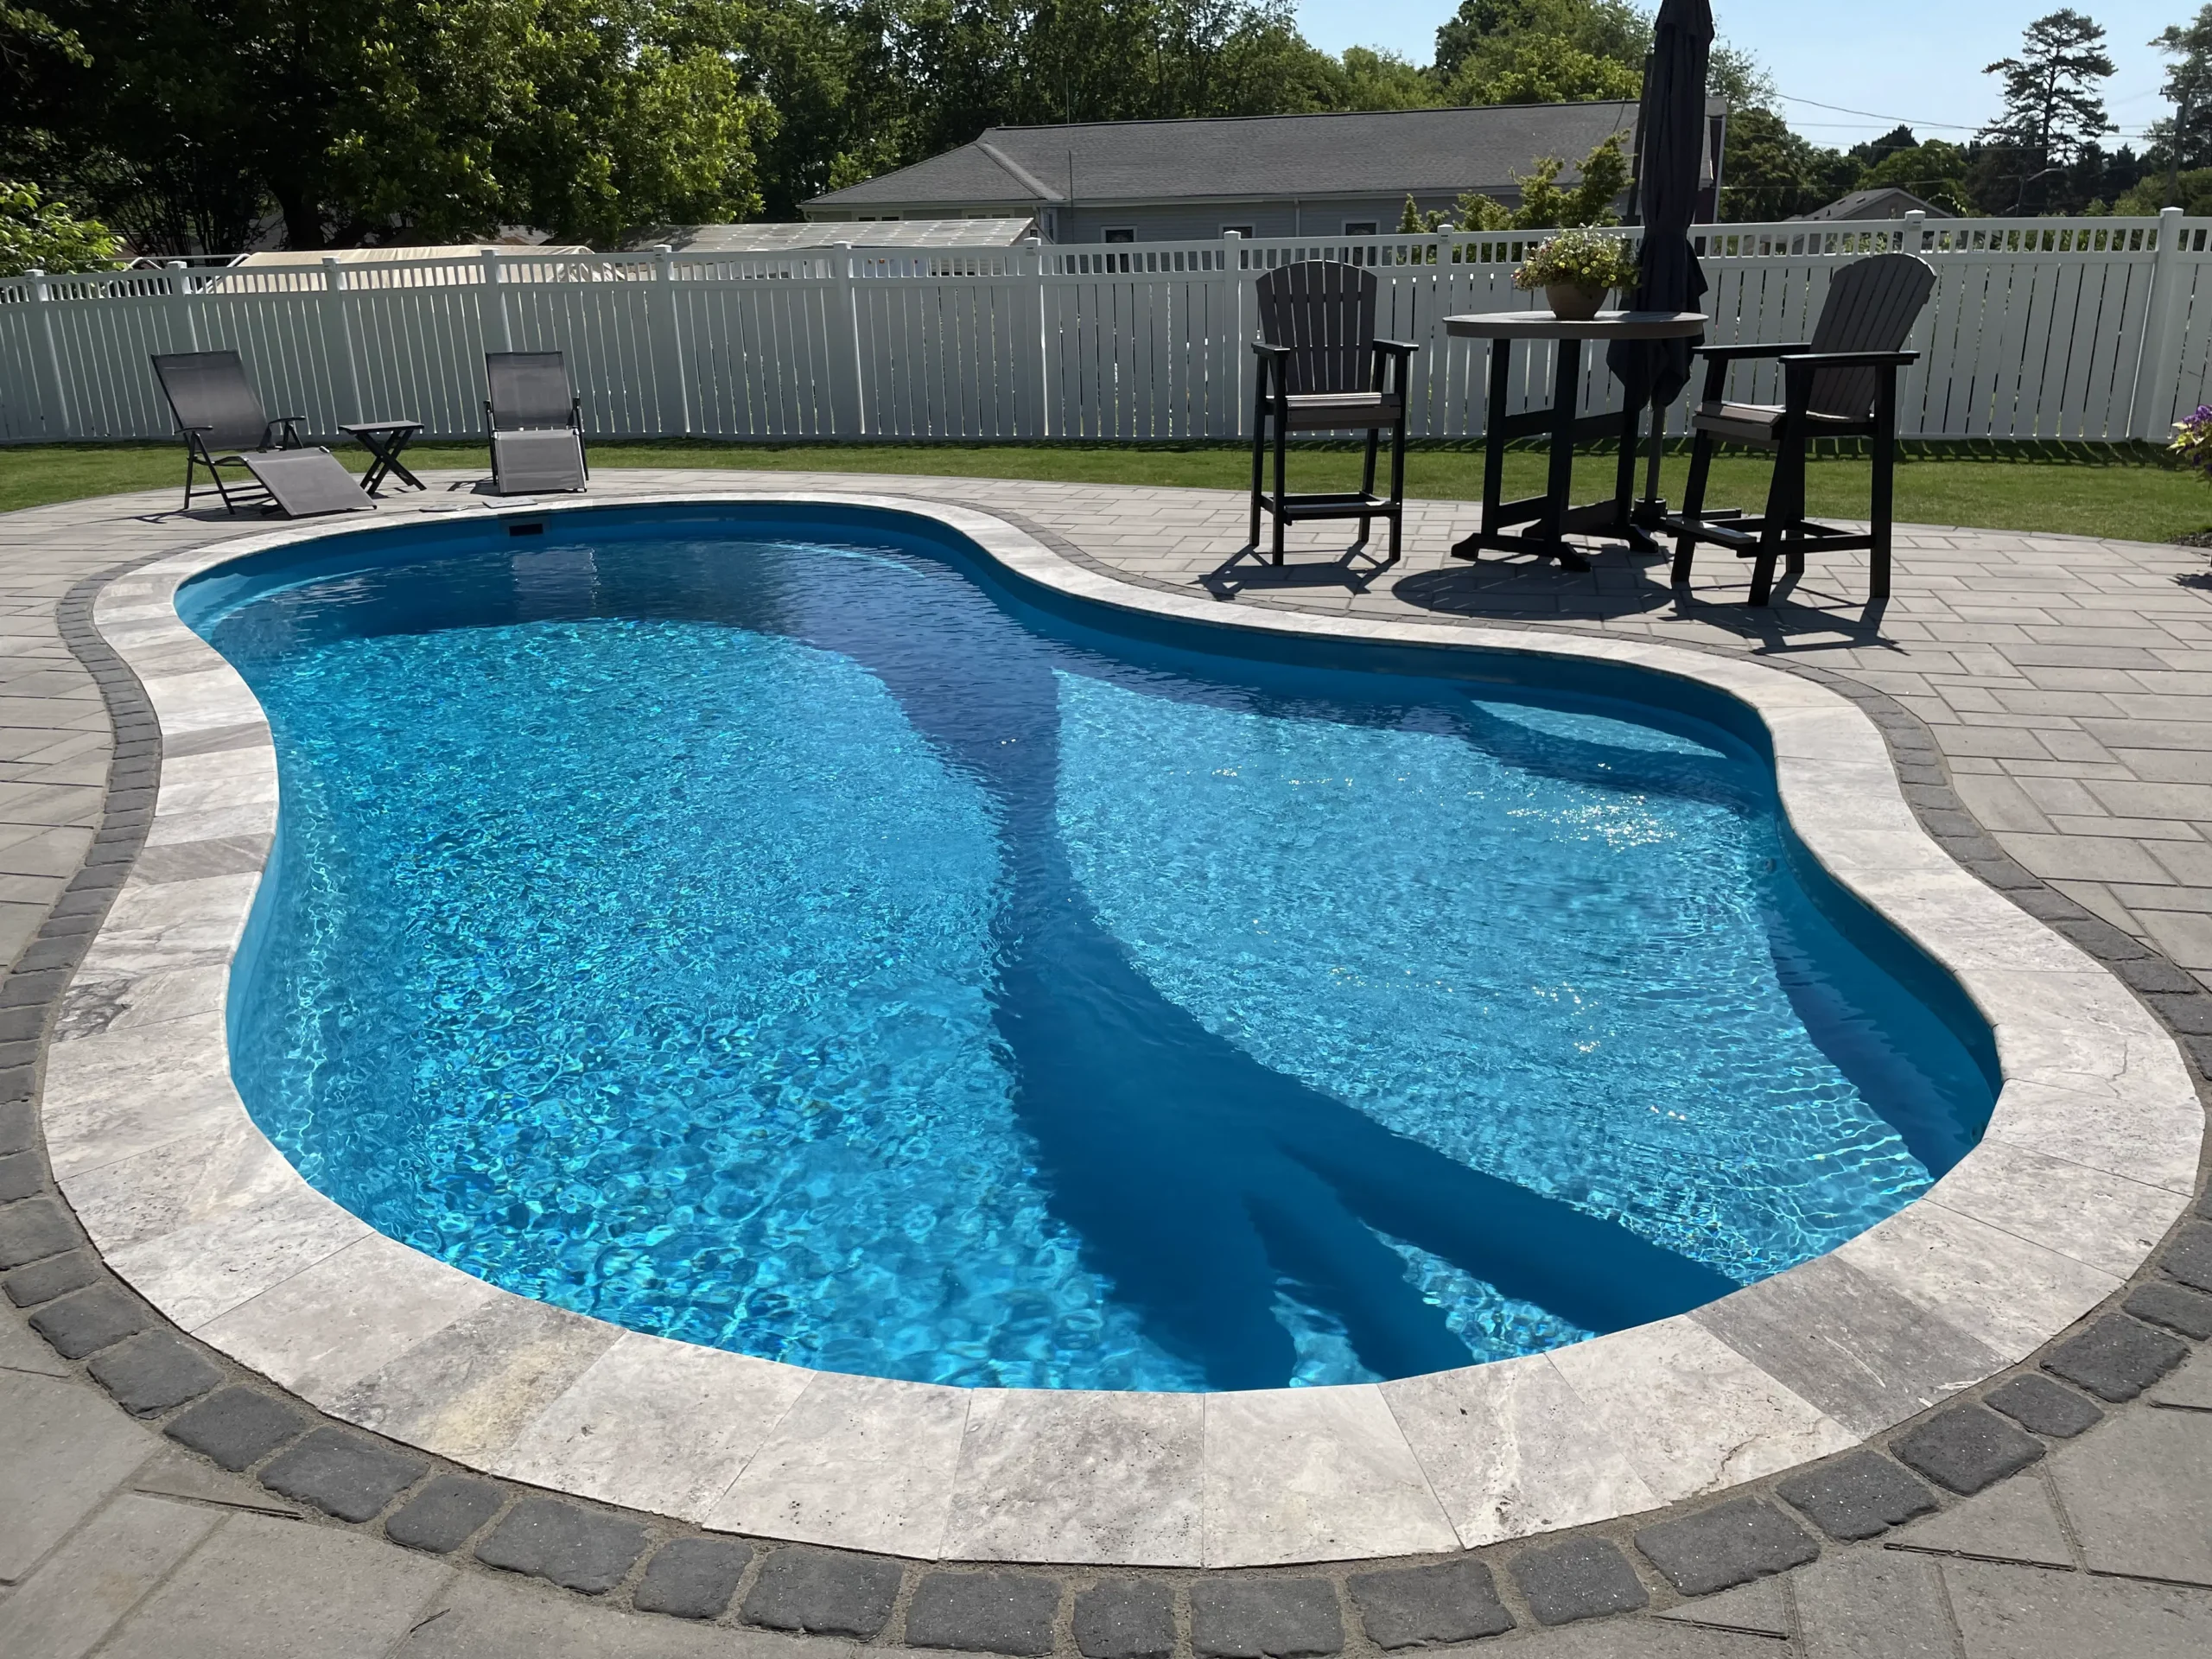 A beautiful fiberglass pool in a hot summer